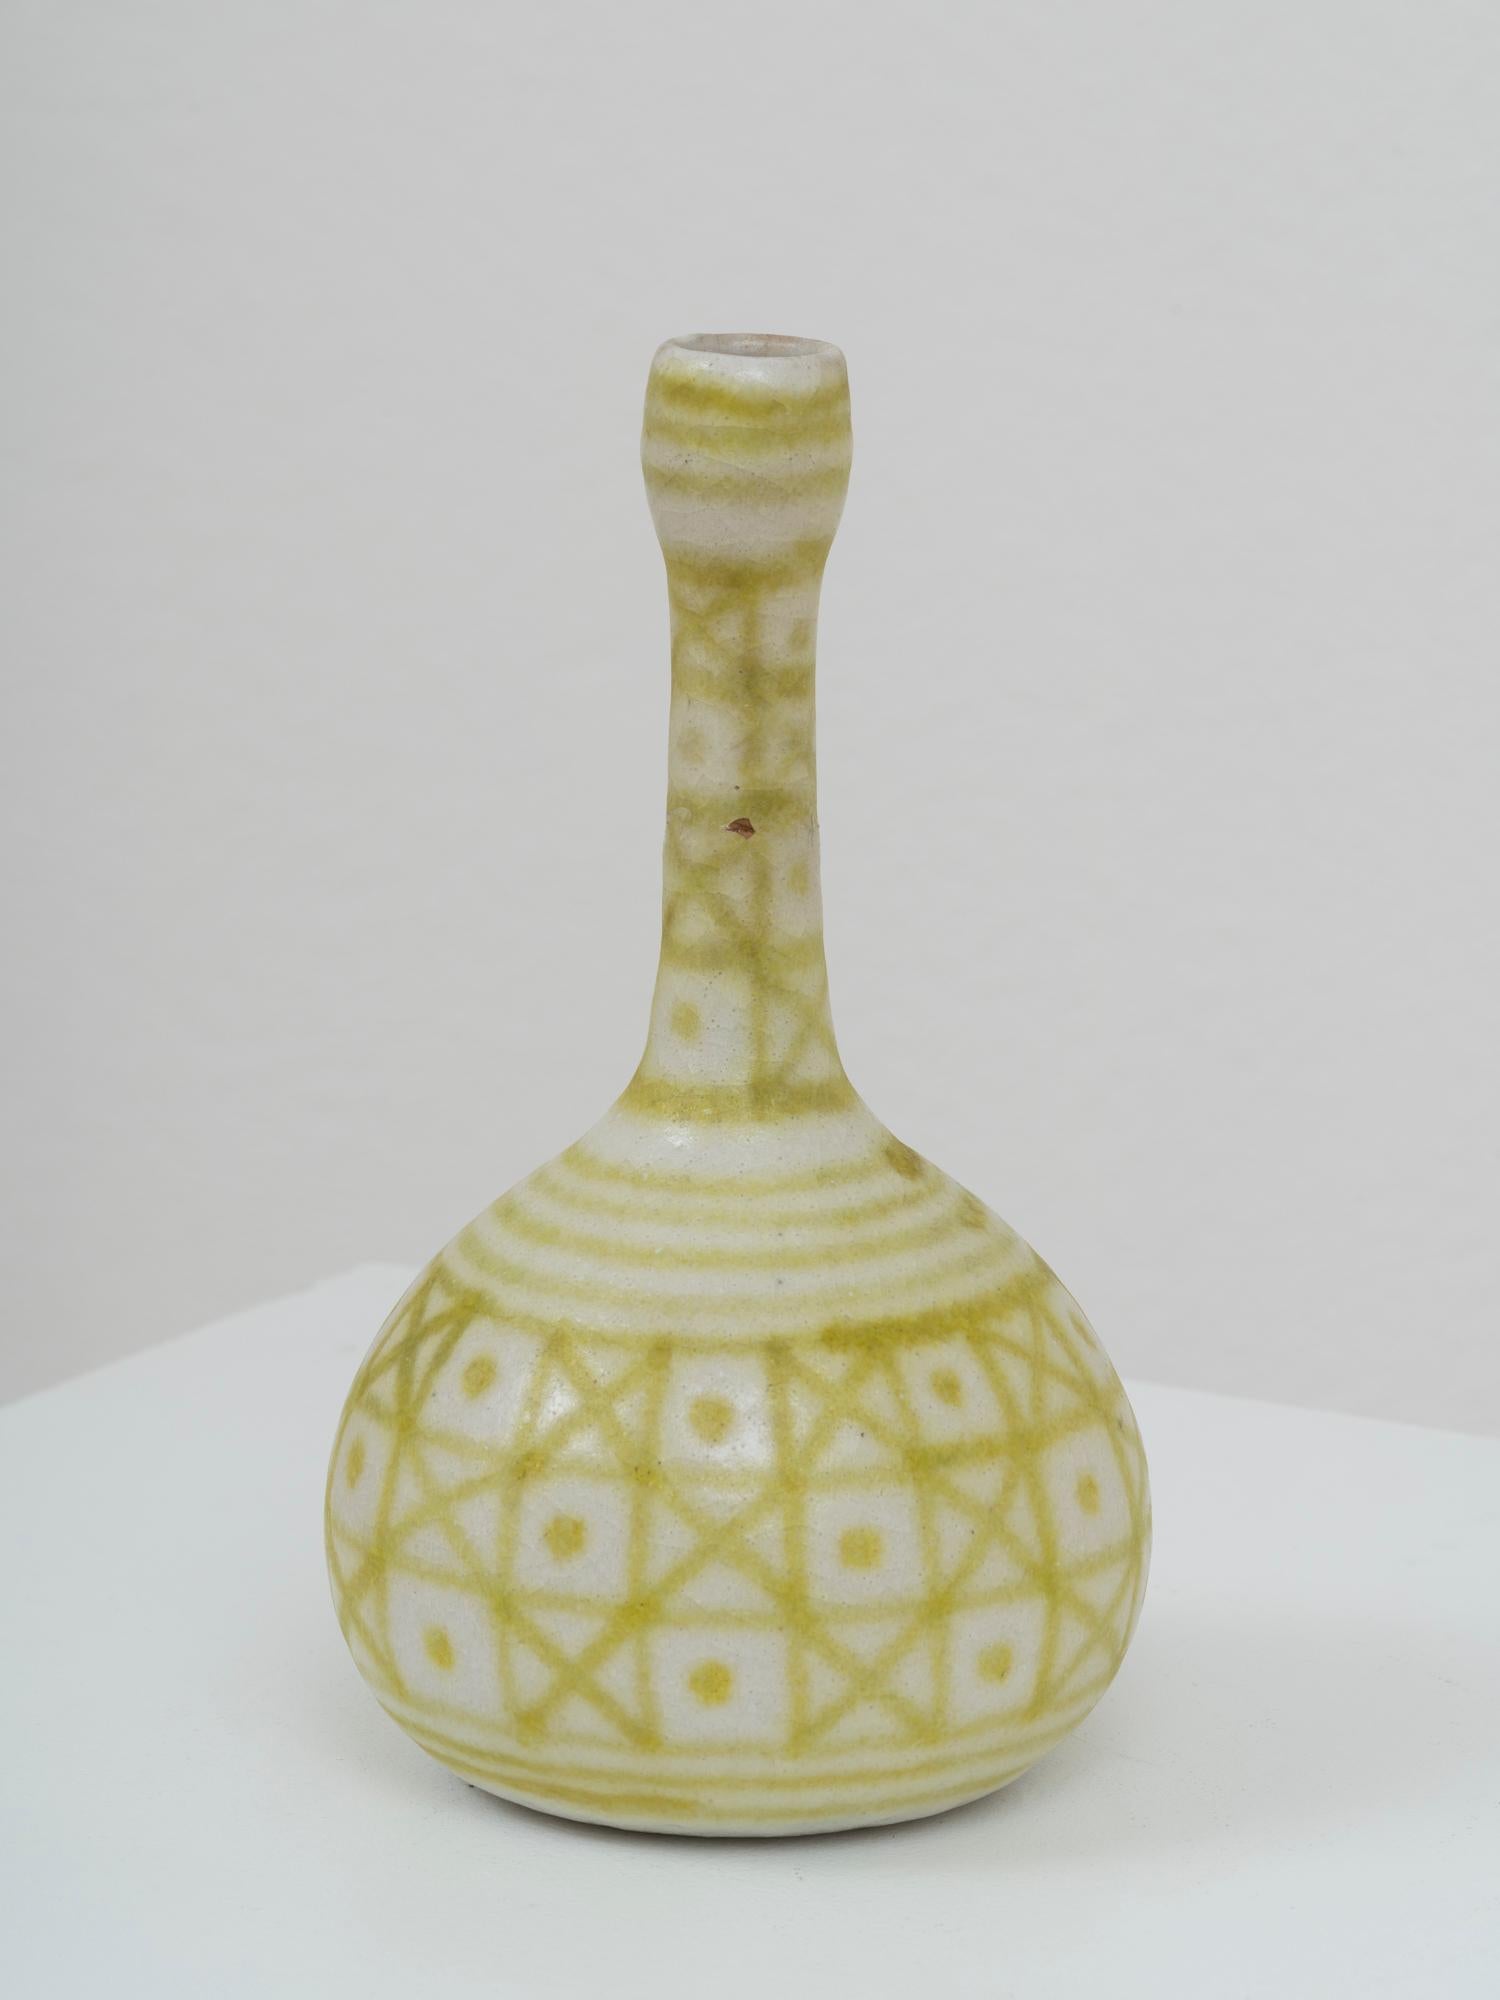 Ikonische Vase des italienischen Keramikmeisters Guido Gambone, aus seiner Zeit in der Manufaktur La Tirrena, die zwischen 1950 und 1967 tätig war. Es ist mit seinem Nachnamen und dem ikonischen Eselzeichen am unteren Rand signiert. Diese Vase hat